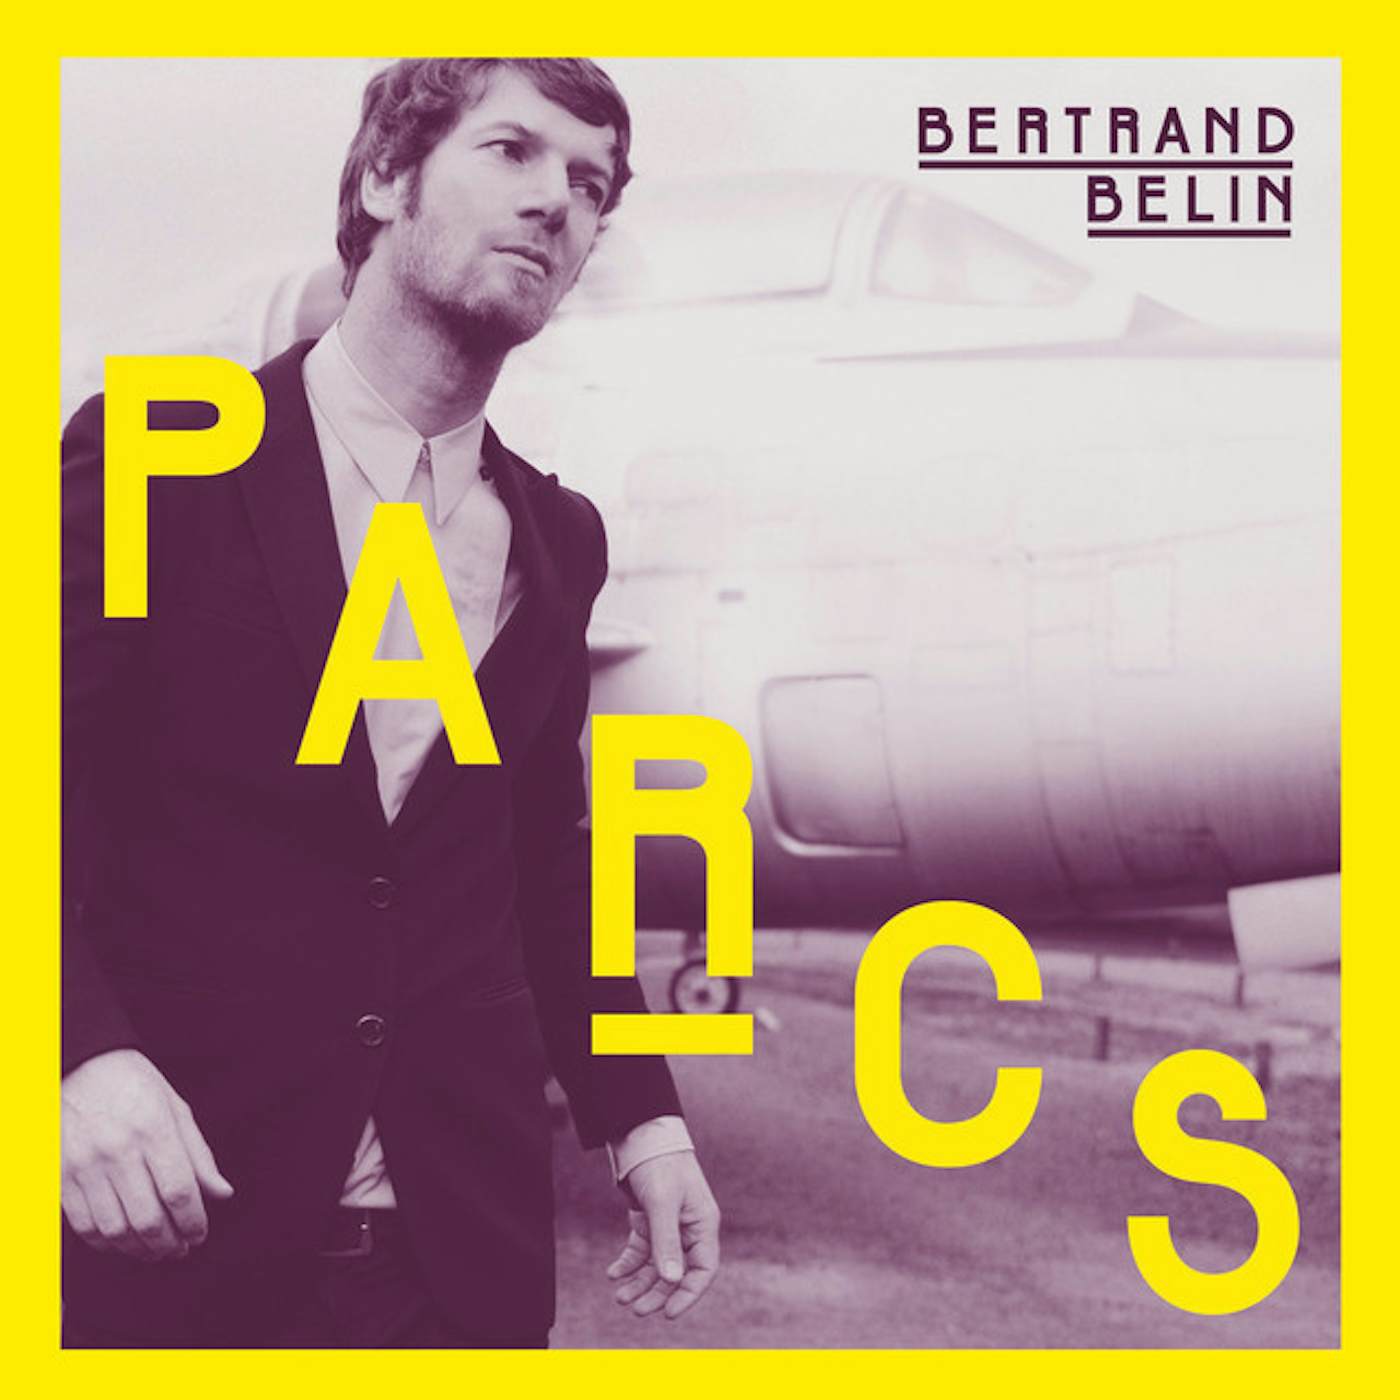 Bertrand Belin Parcs Vinyl Record